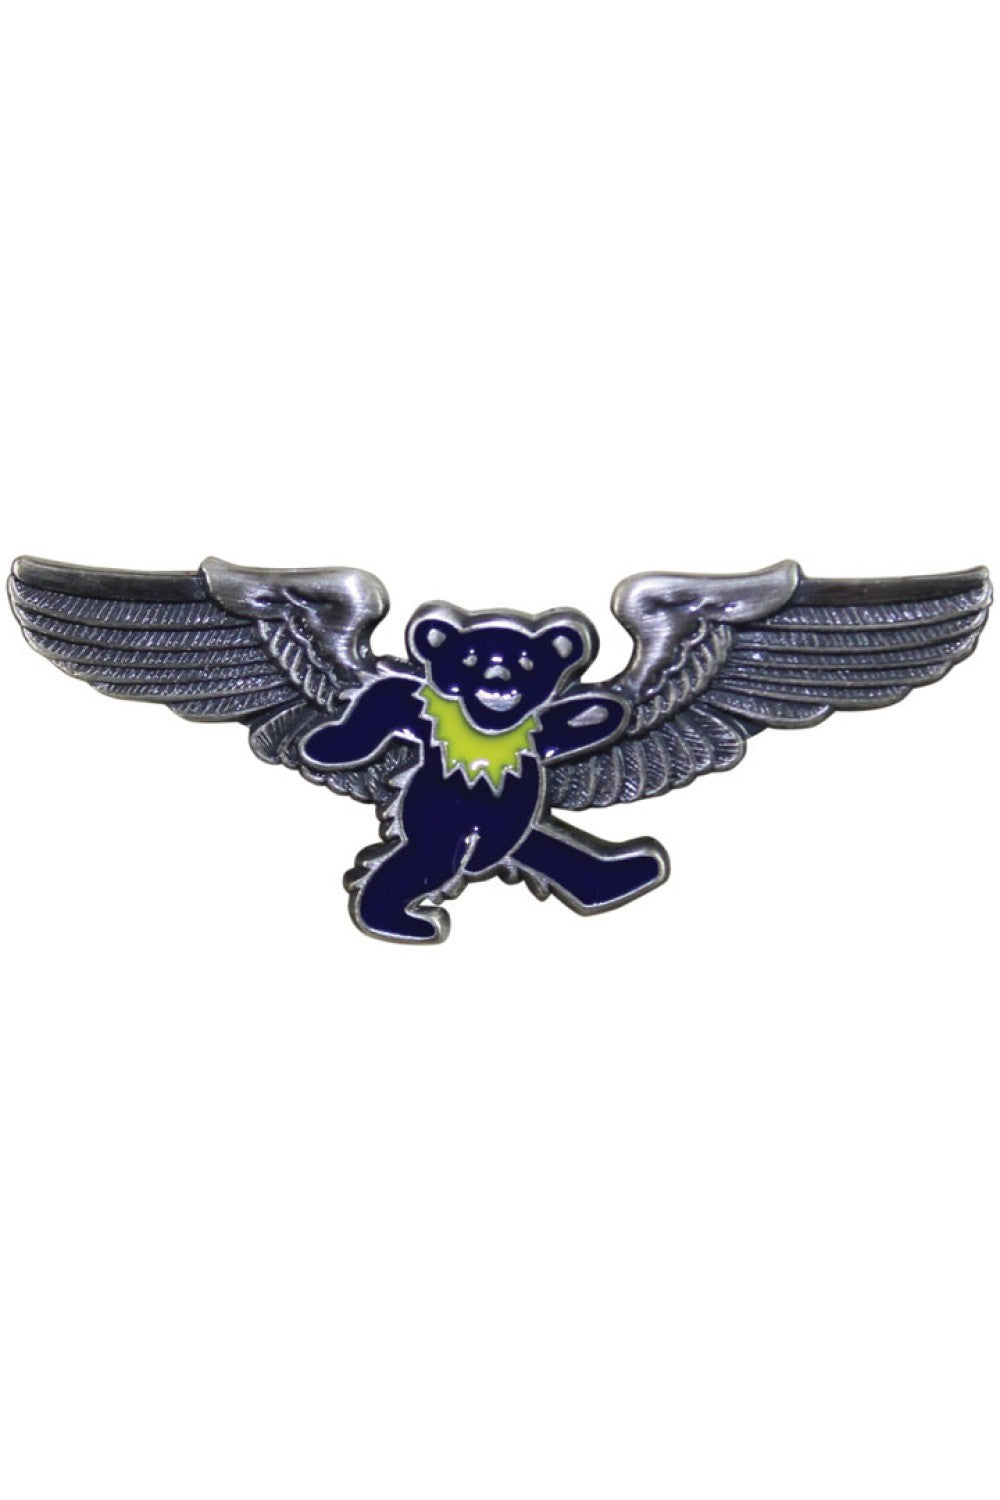 Grateful Dead Blue Bear Pilot Pin Rockwings - eDeadShop